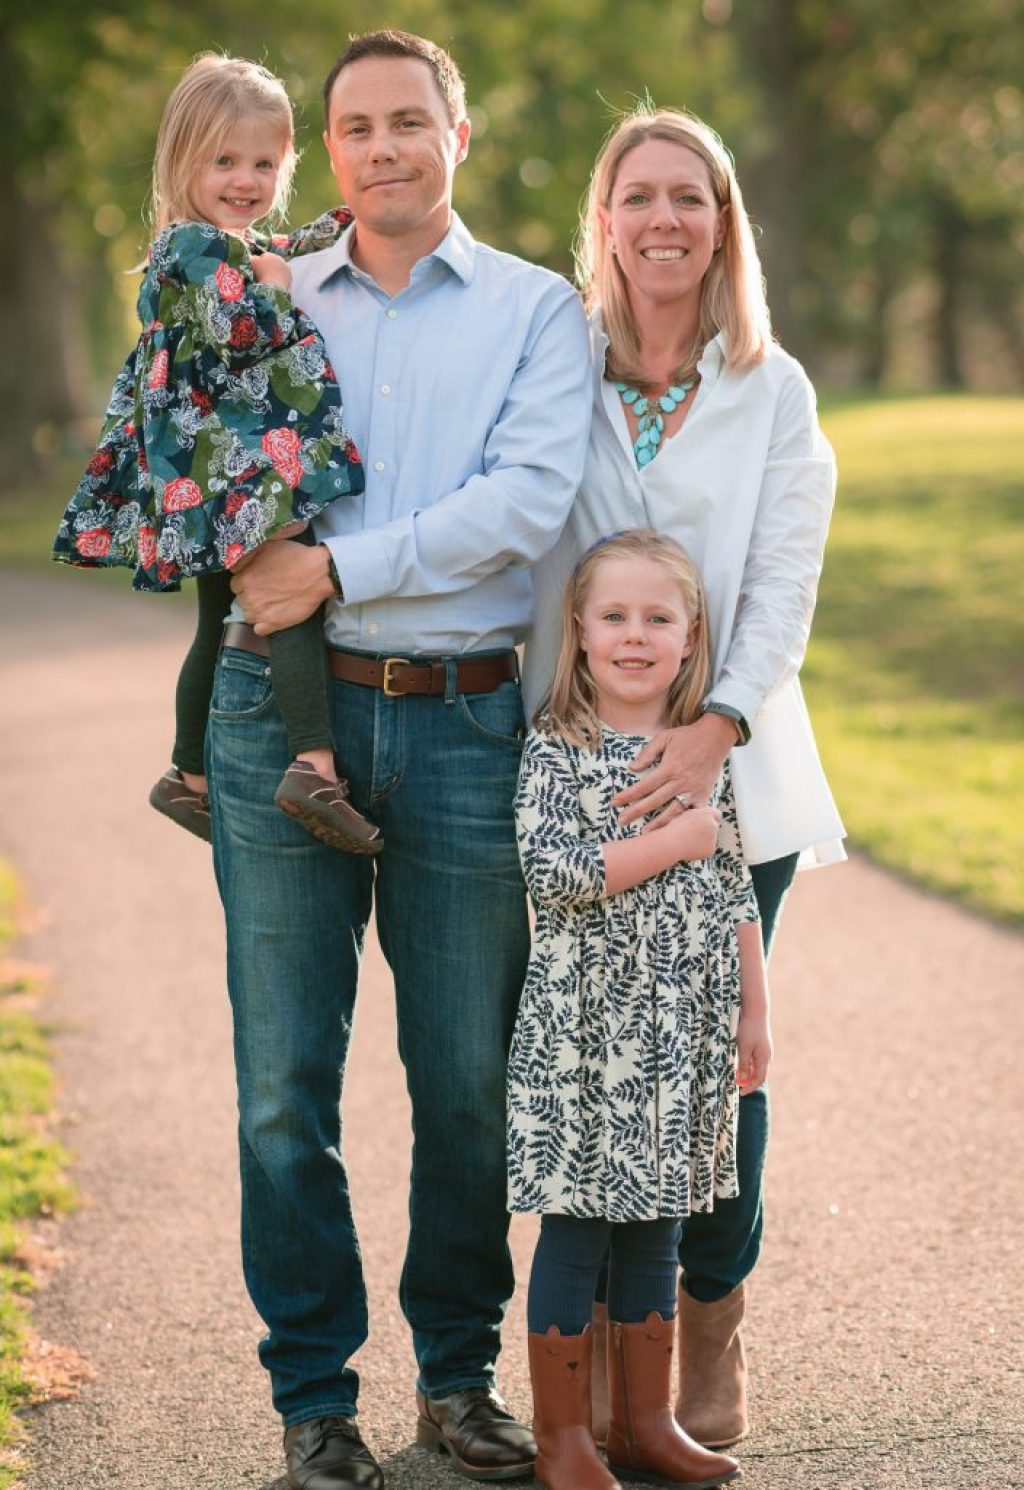 Taylor Hulett's Happy Family Photos